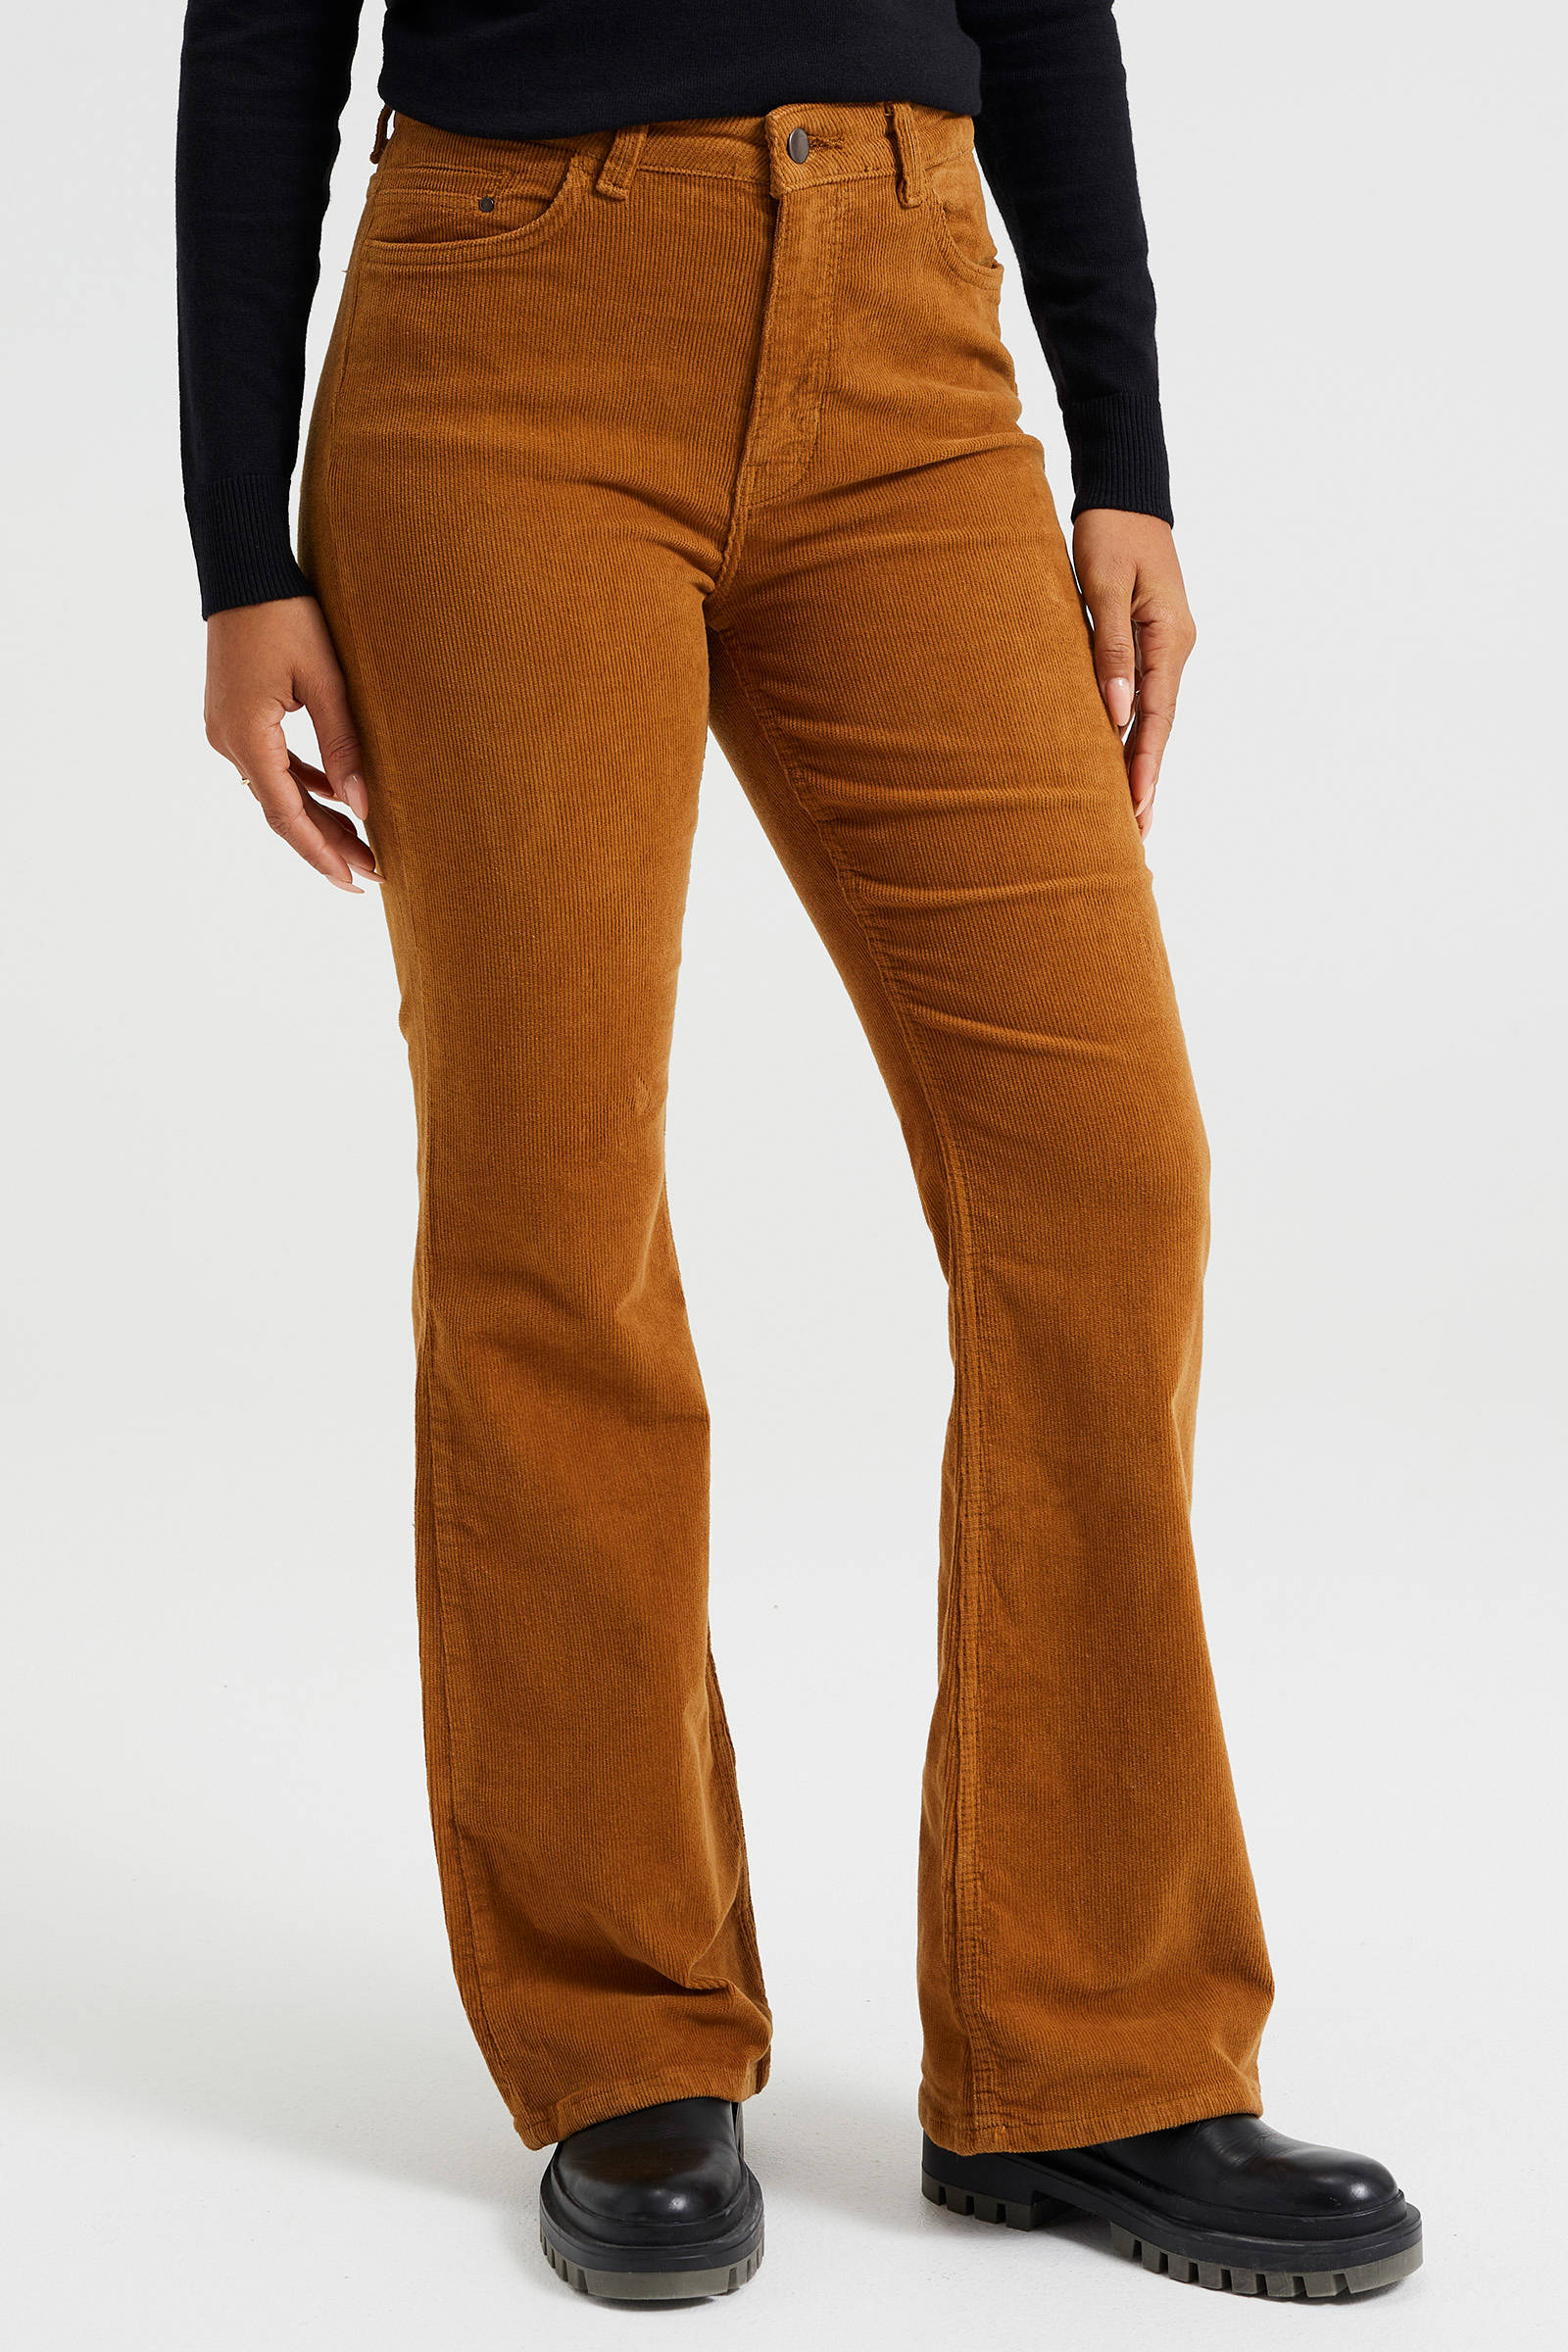 Malvin Corduroy broek volledige print casual uitstraling Mode Broeken Corduroy broeken 